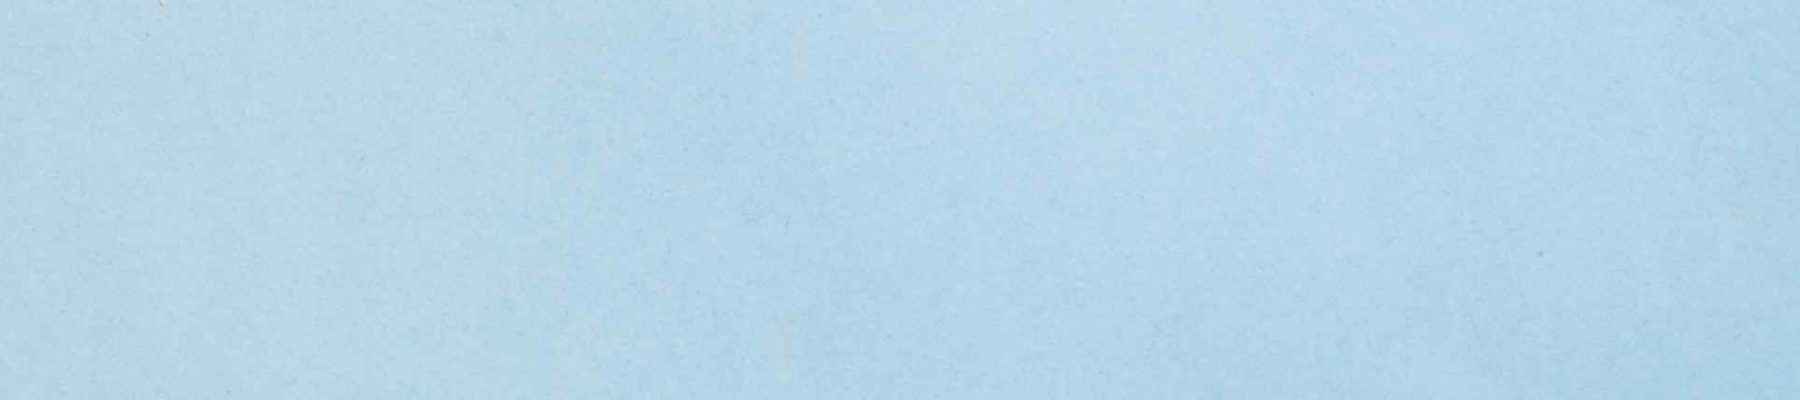 Blue Header Baking Final px) (1950 x 350 px) (1926 x 500 px) (1) (1)